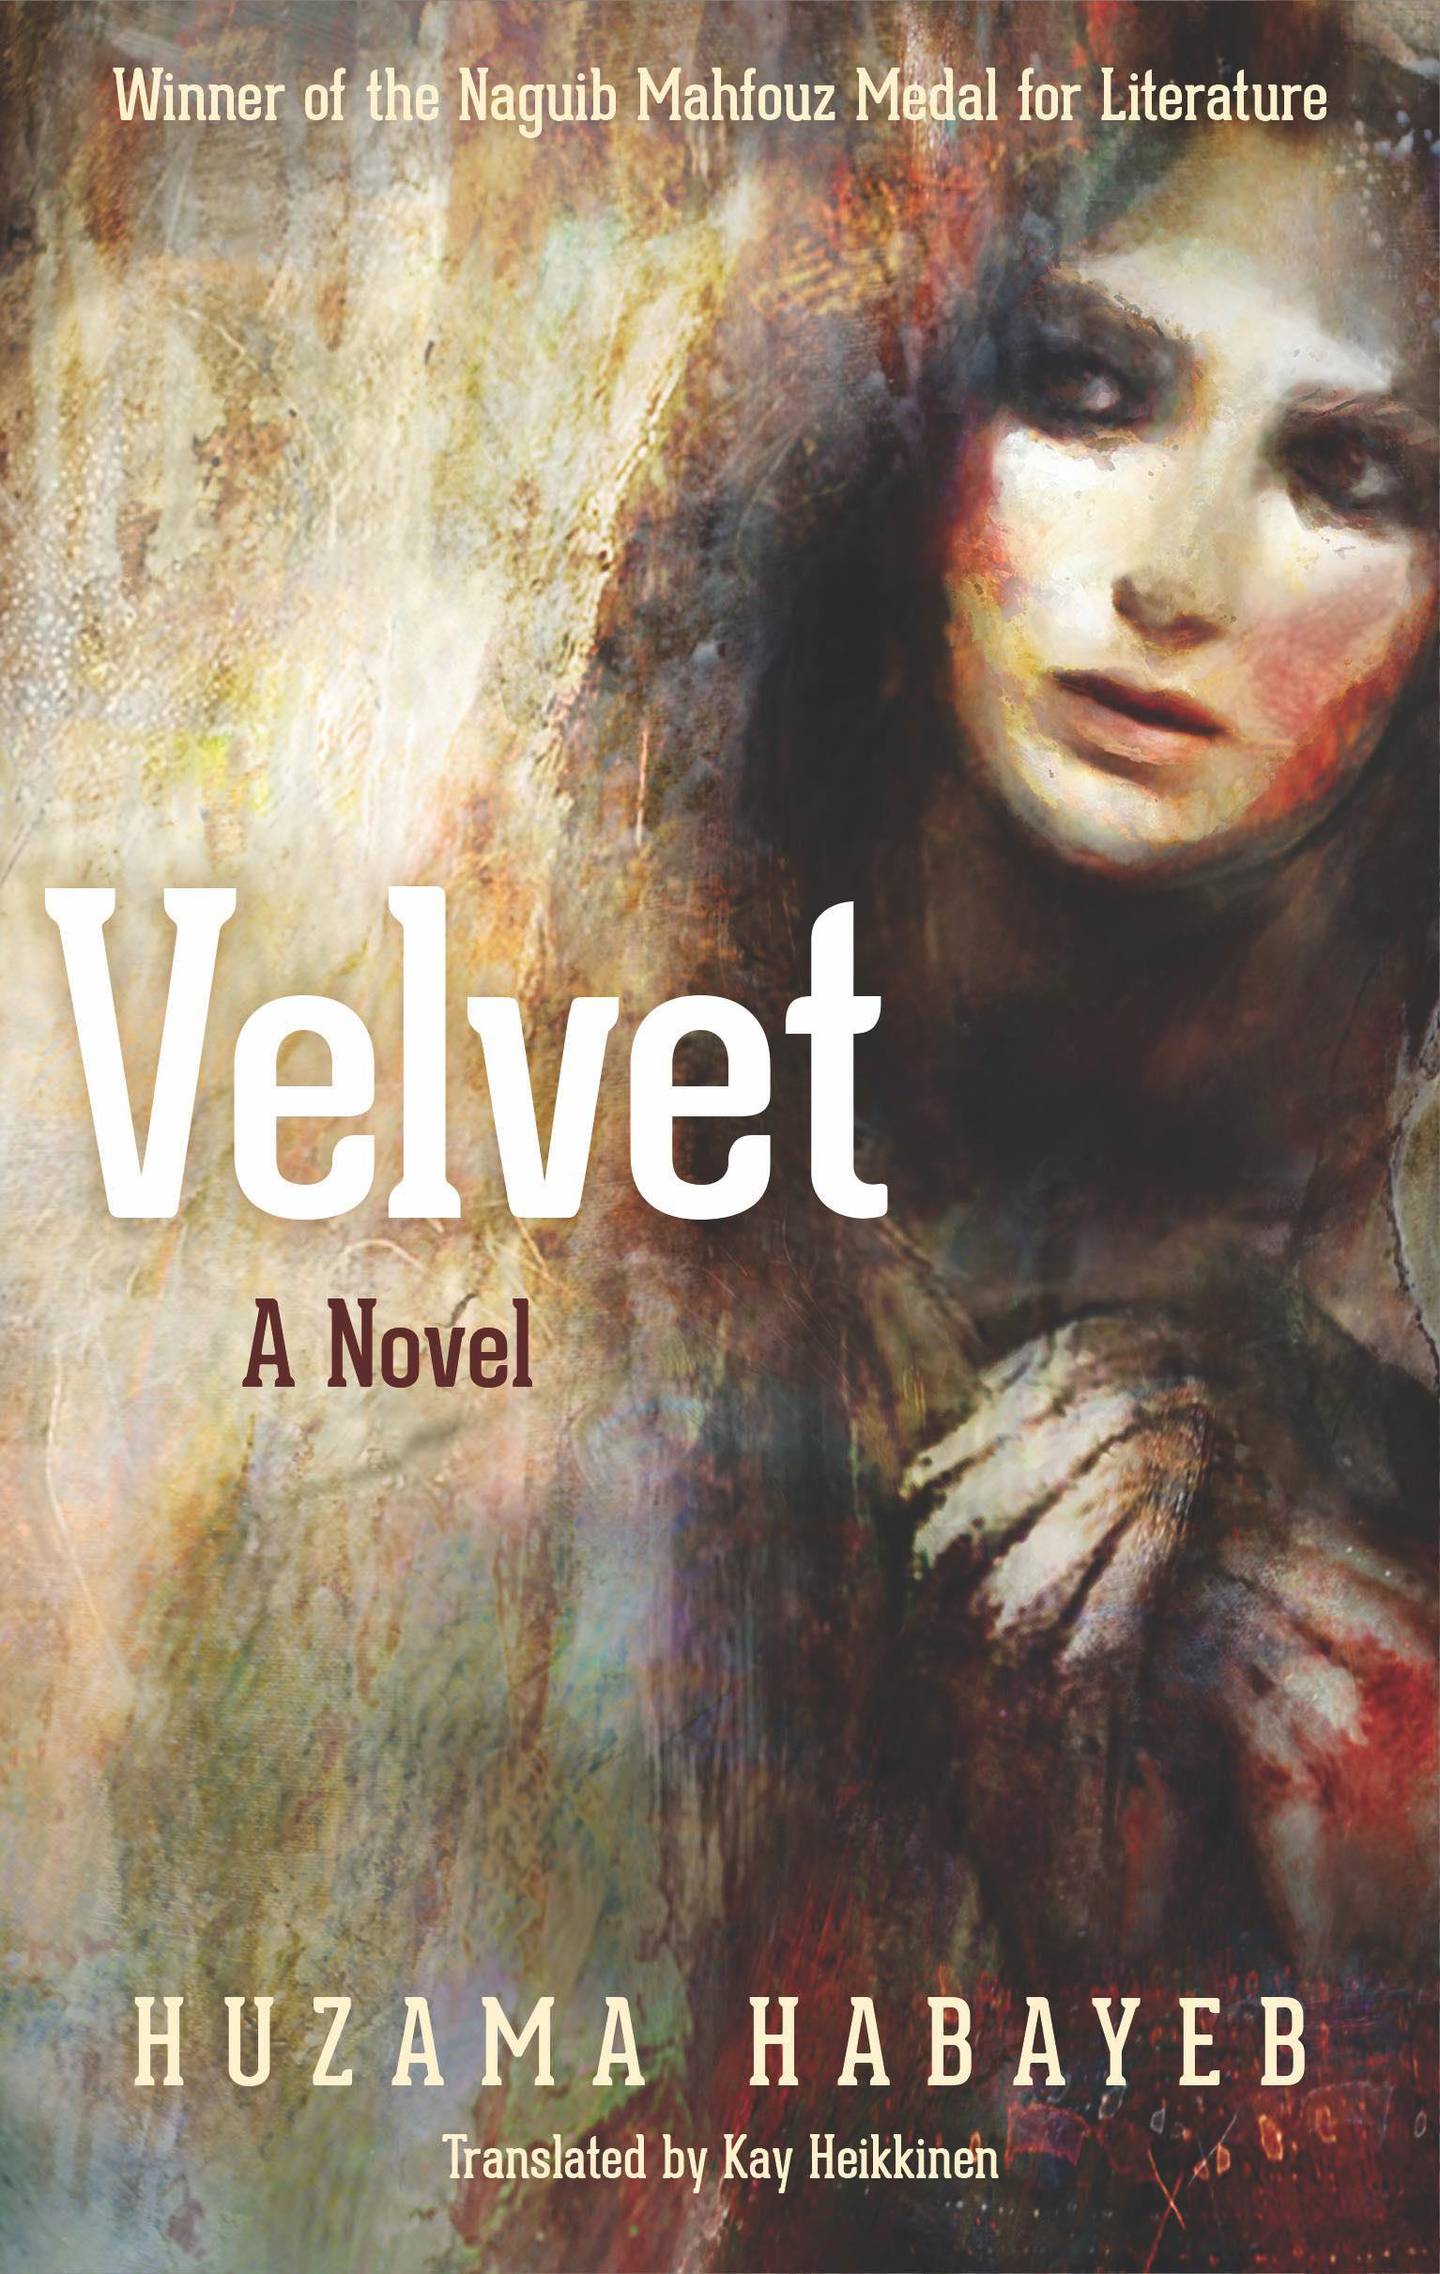 The front cover of the novel 'Velvet'